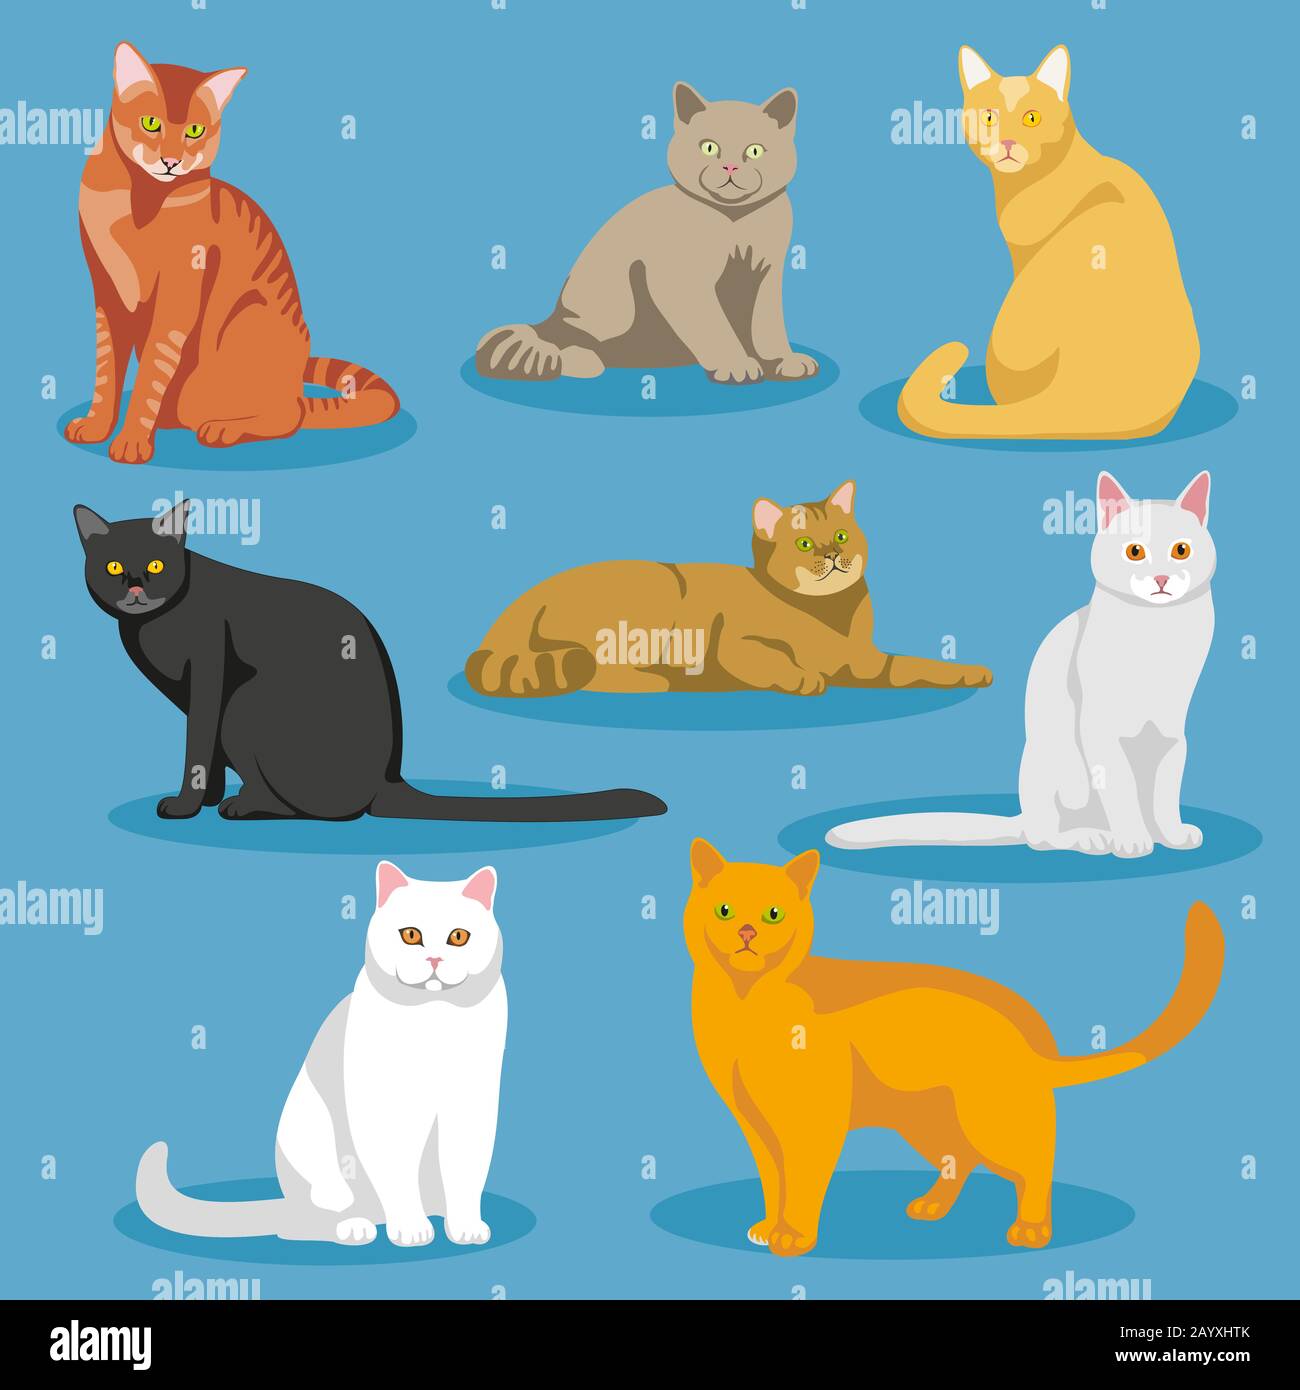 Niedliche Cartoon-Kätzchen oder Katzen Vektor-Set. Satz von Katzen und Cartoon-Illustration von Hauskatze Stock Vektor